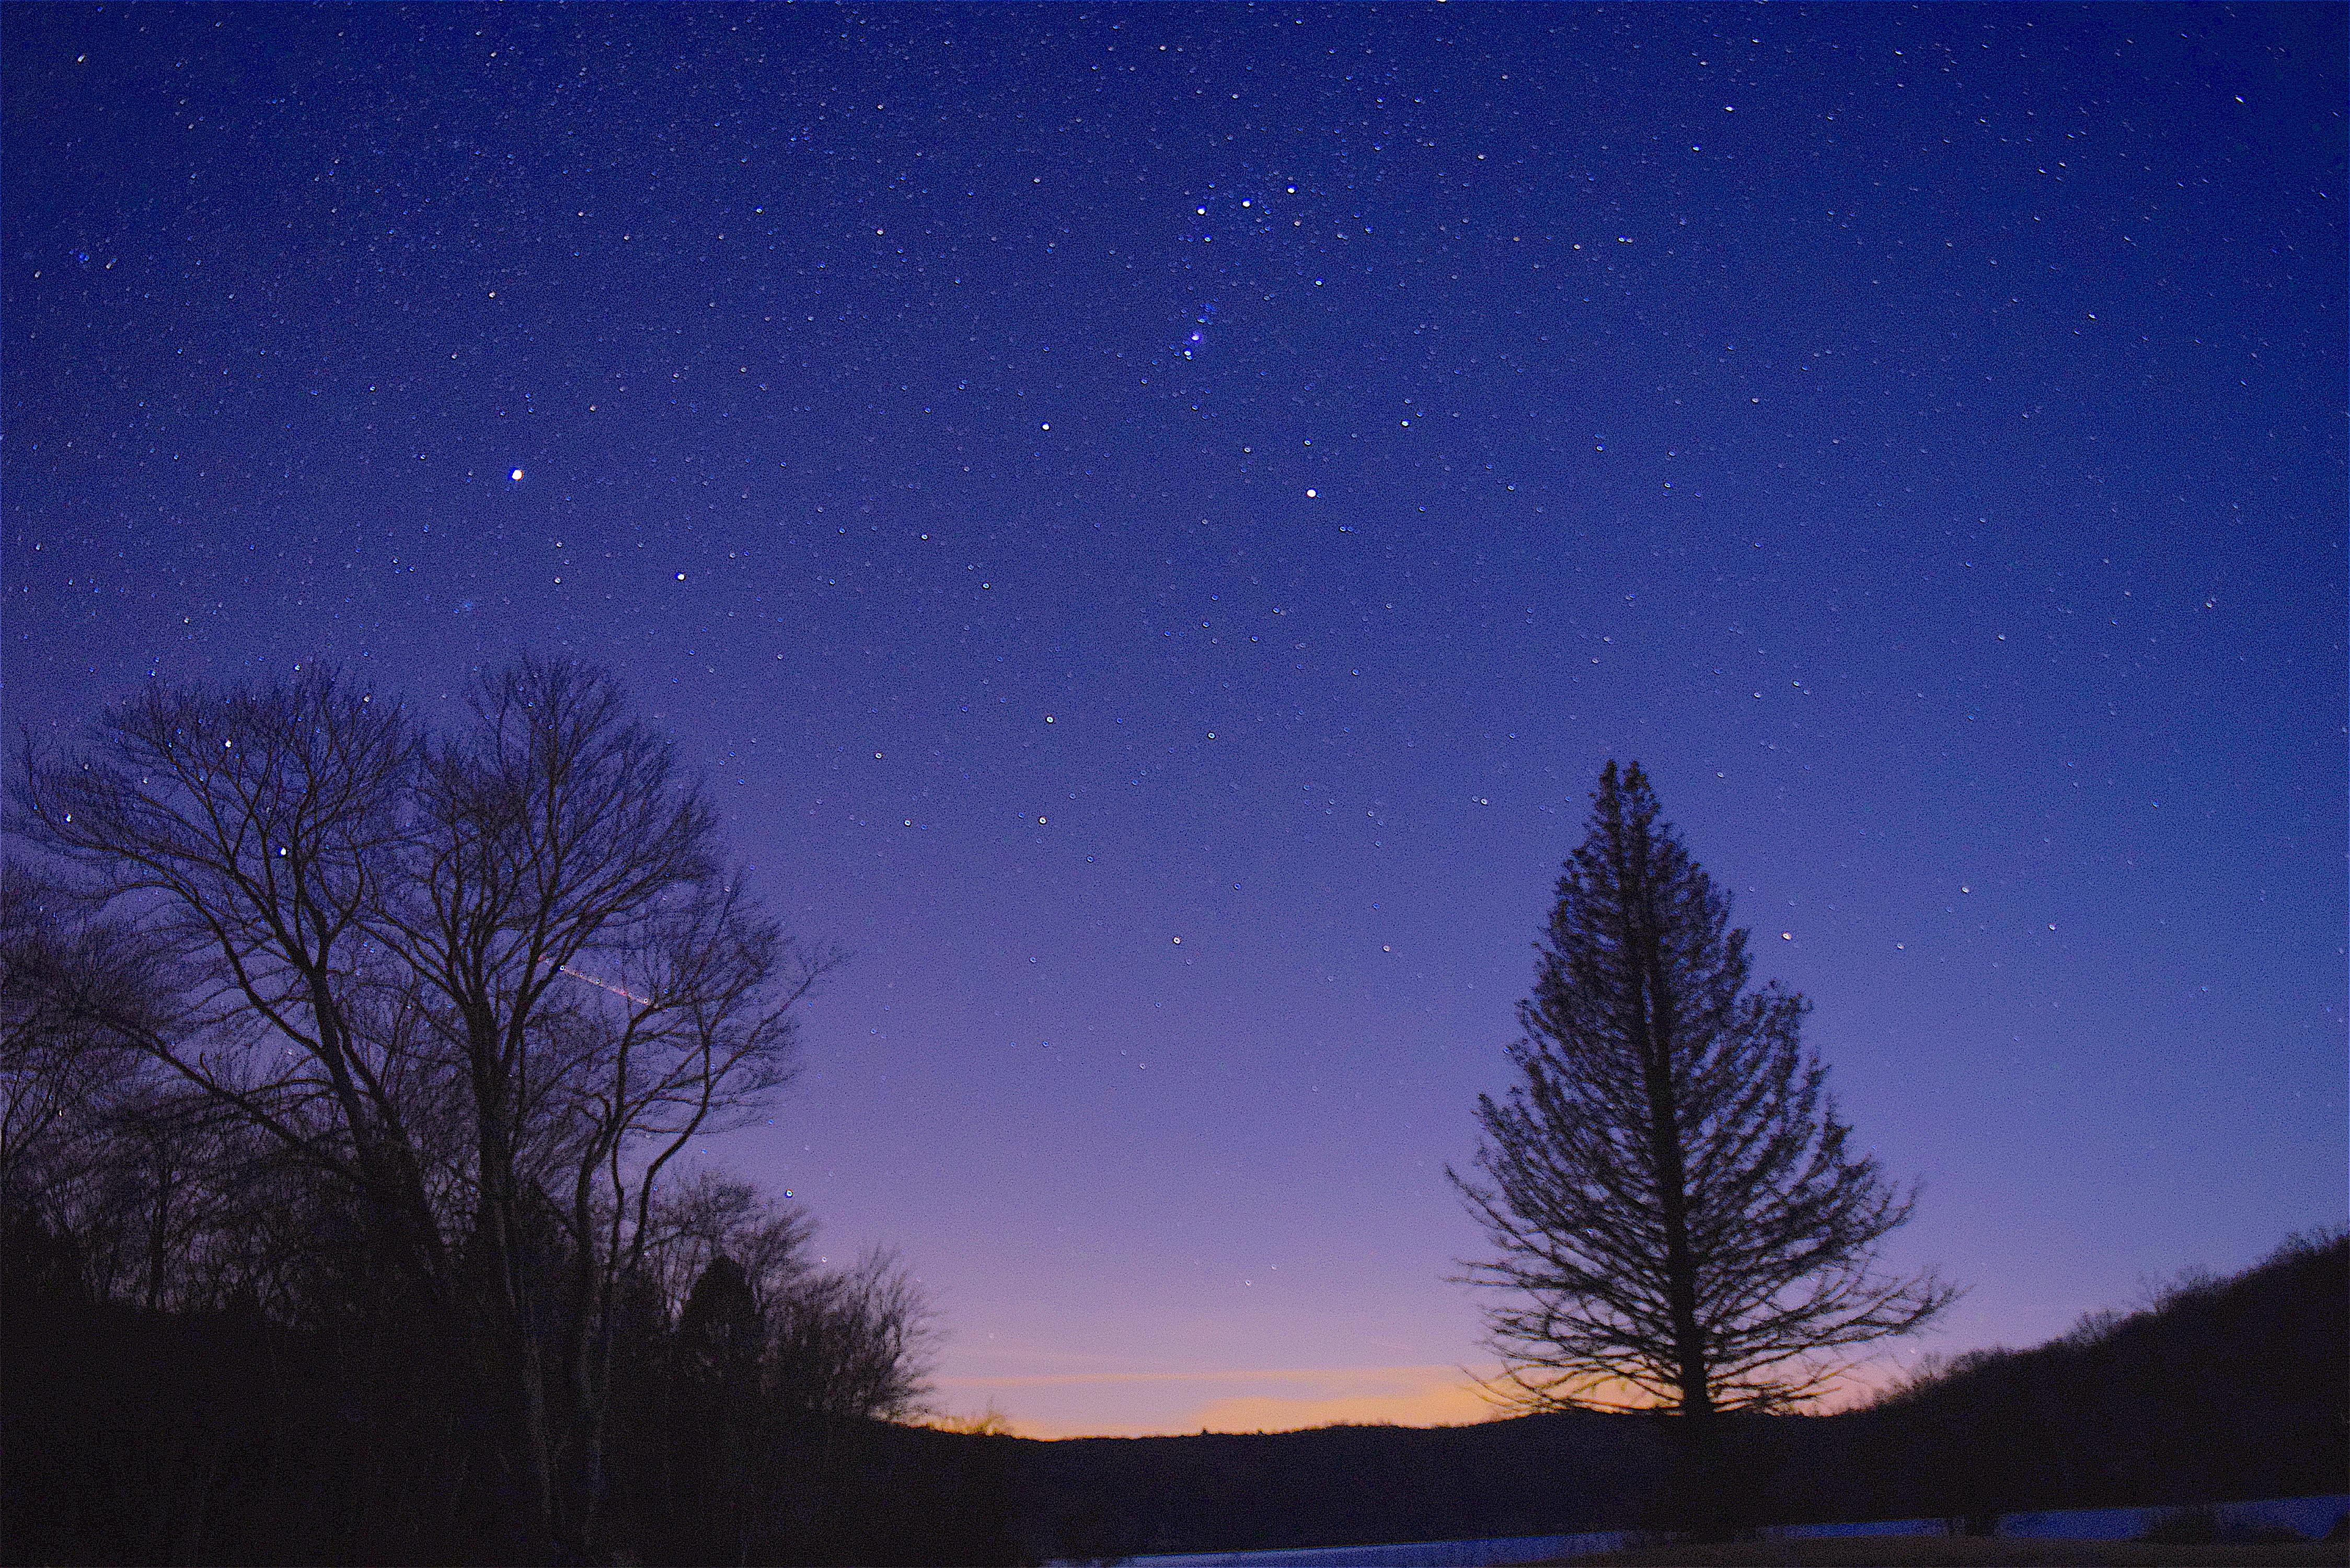 лес звезда облака небо обои Hd, красивая картинка ночного неба, ночь,  звездное небо фон картинки и Фото для бесплатной загрузки